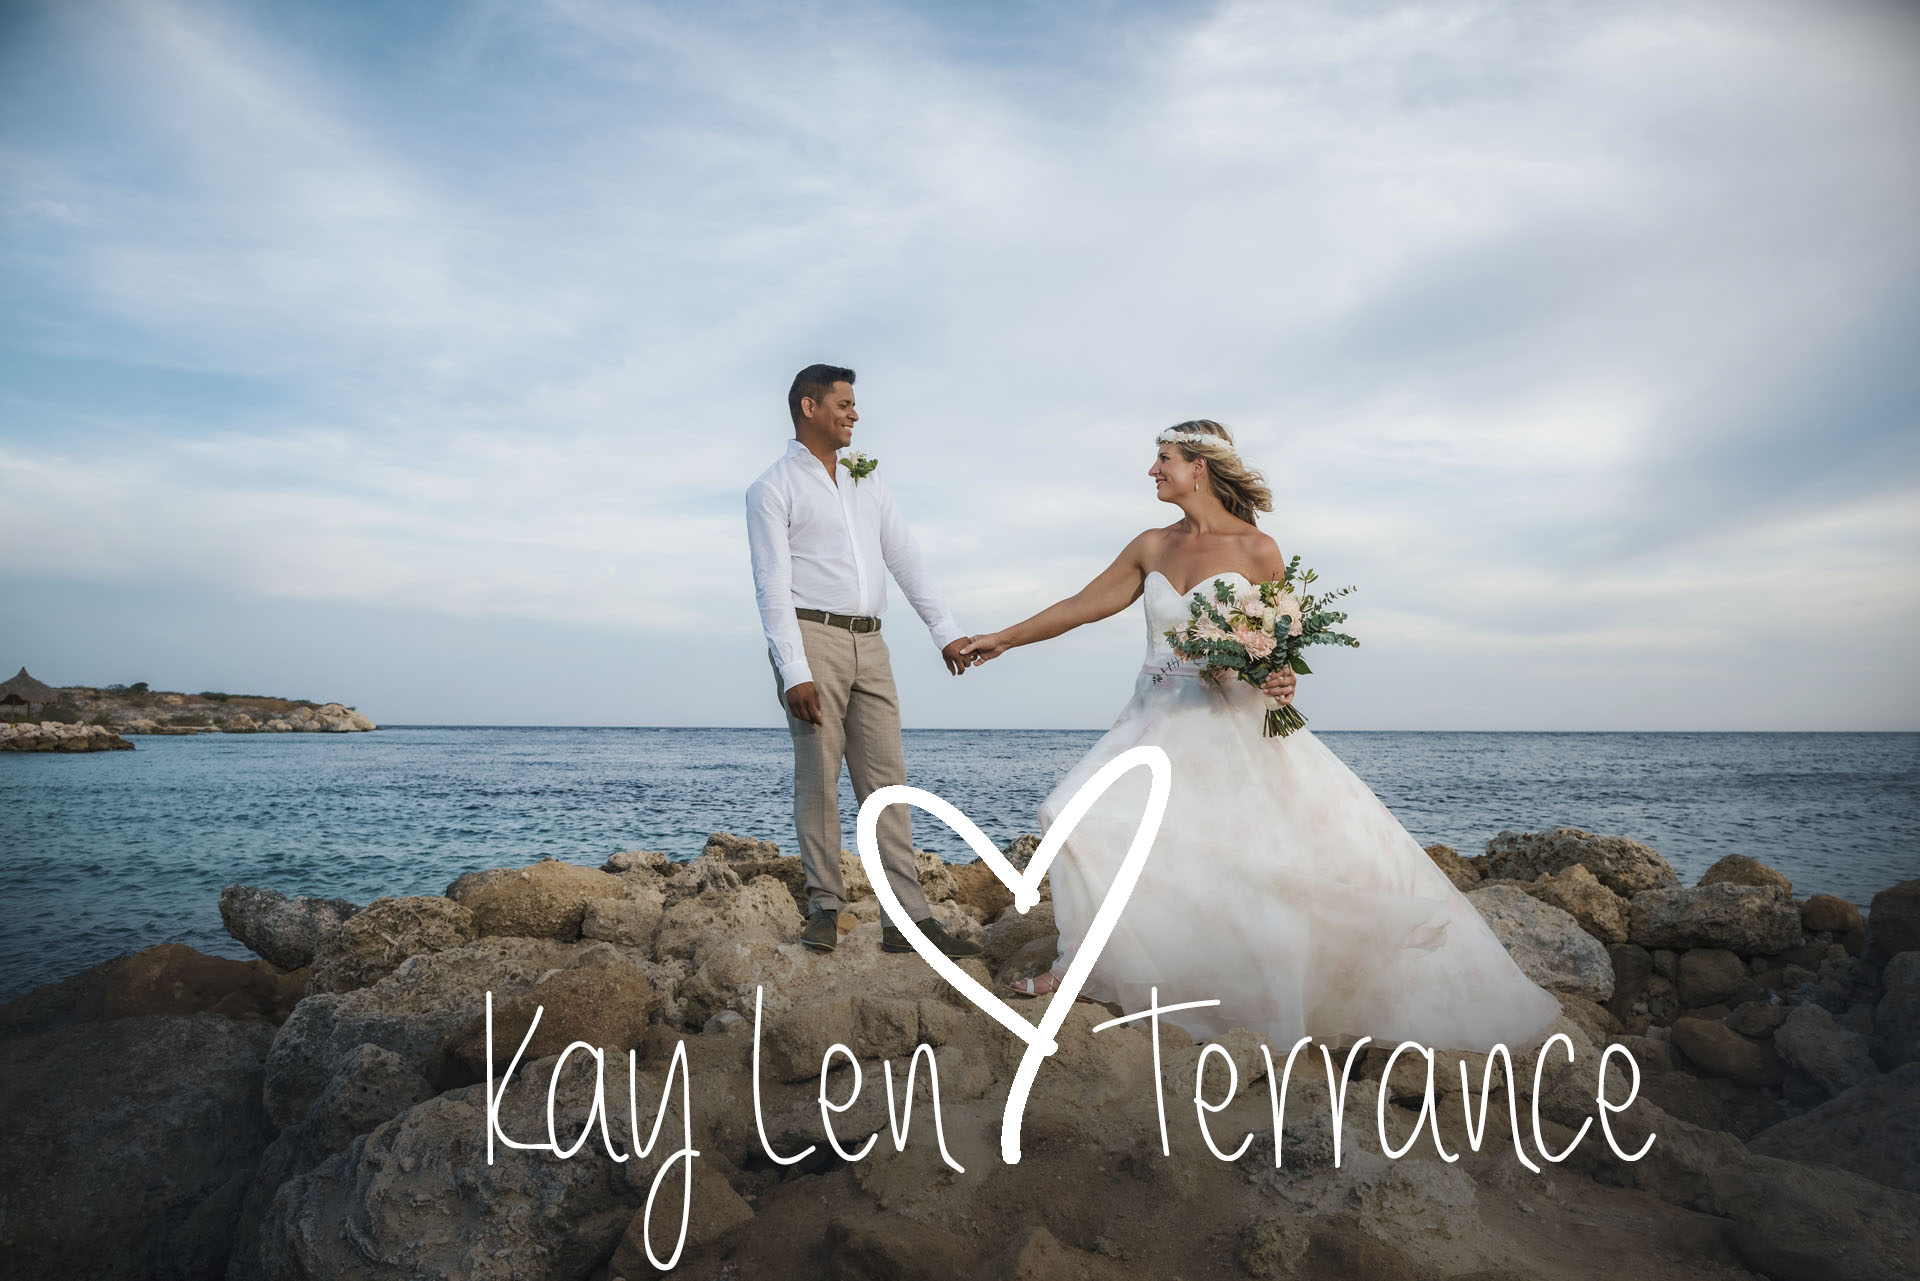 Kay Len & Terrance